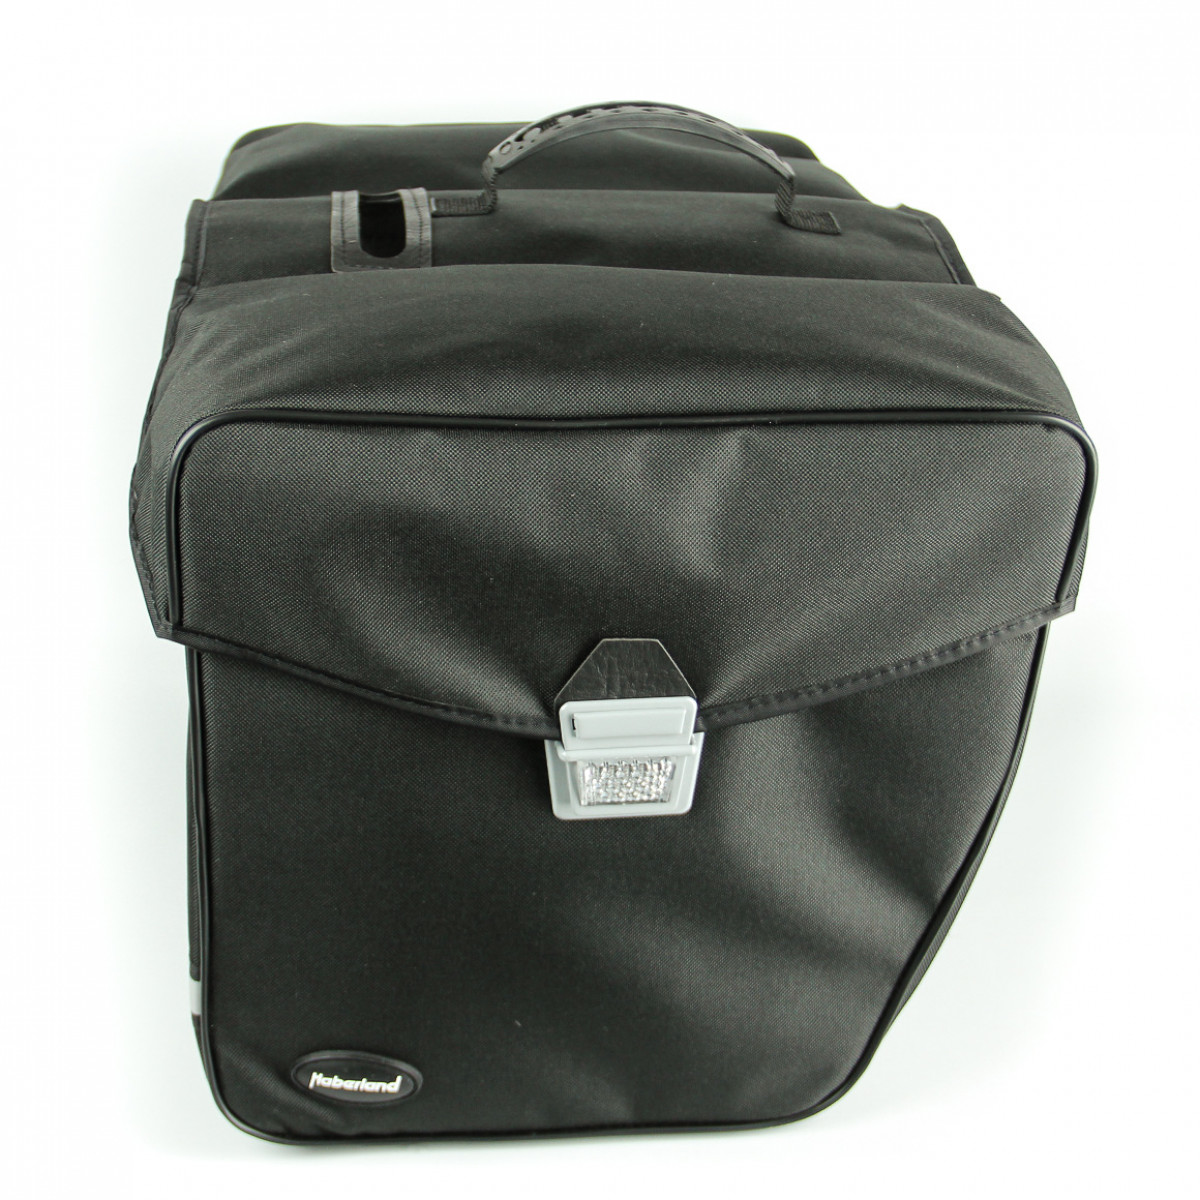 Haberland Doppeltasche Basic L 3.0 in Grau mit 31 l Volumen